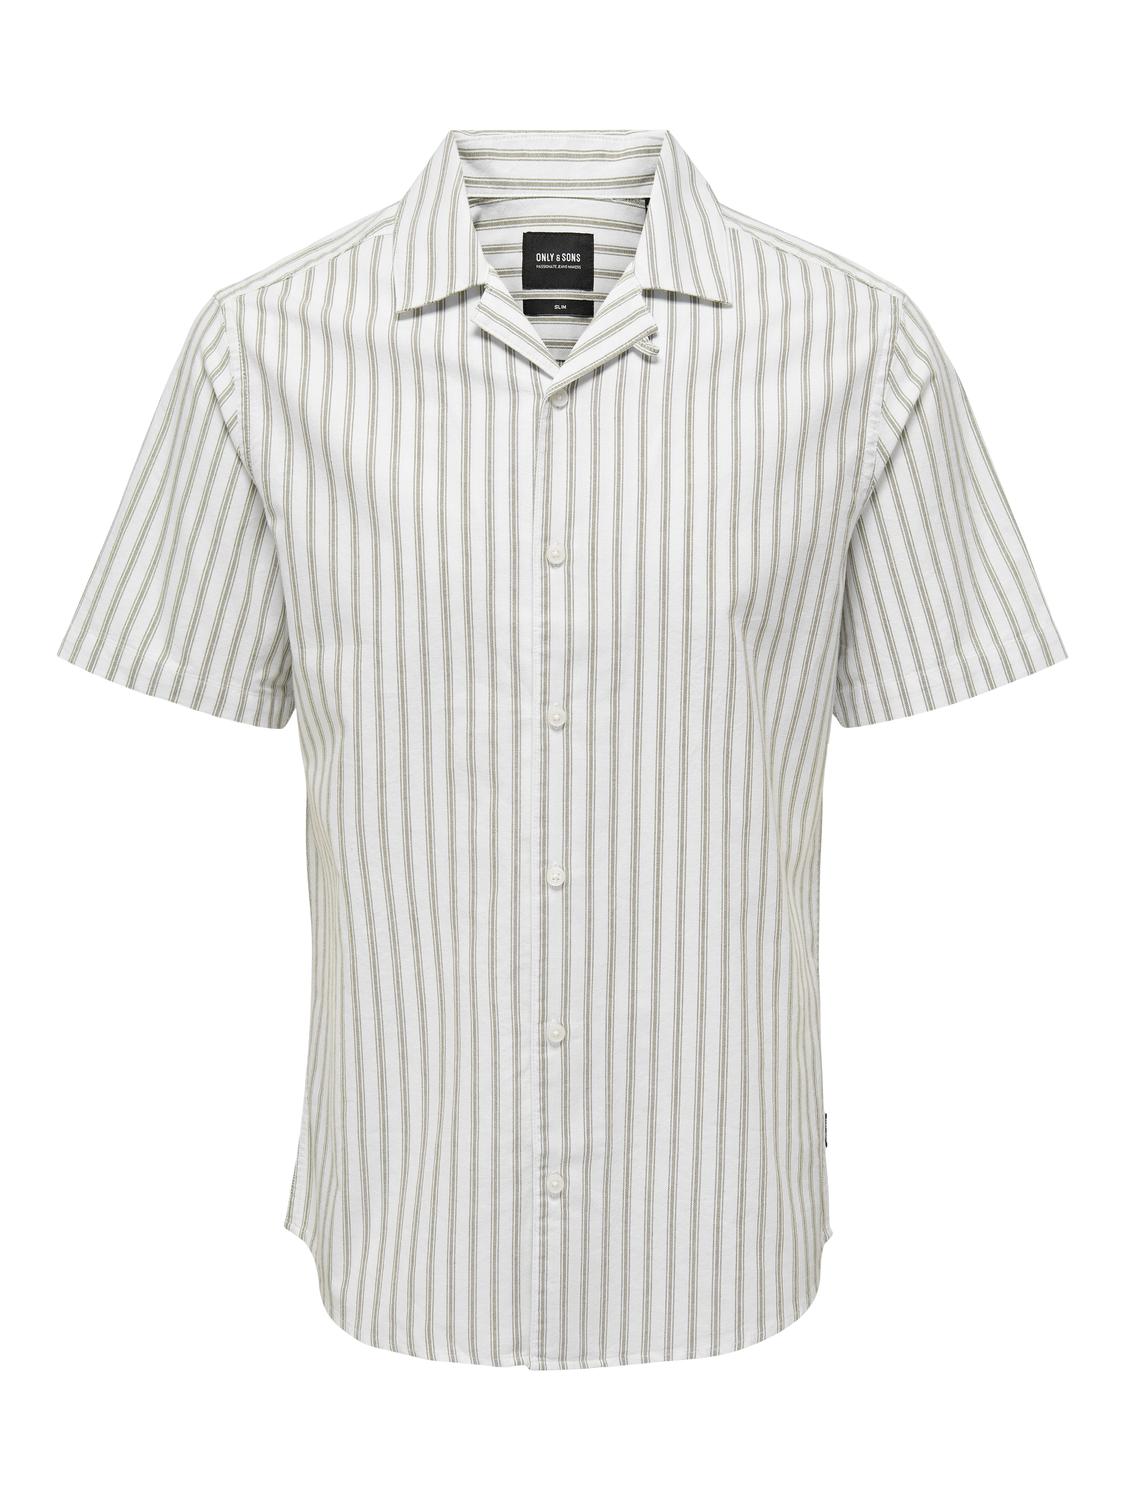 Only & Sons Overhemd 'Alvaro' in de kleur Olijfgroen / Wit, Productweergave